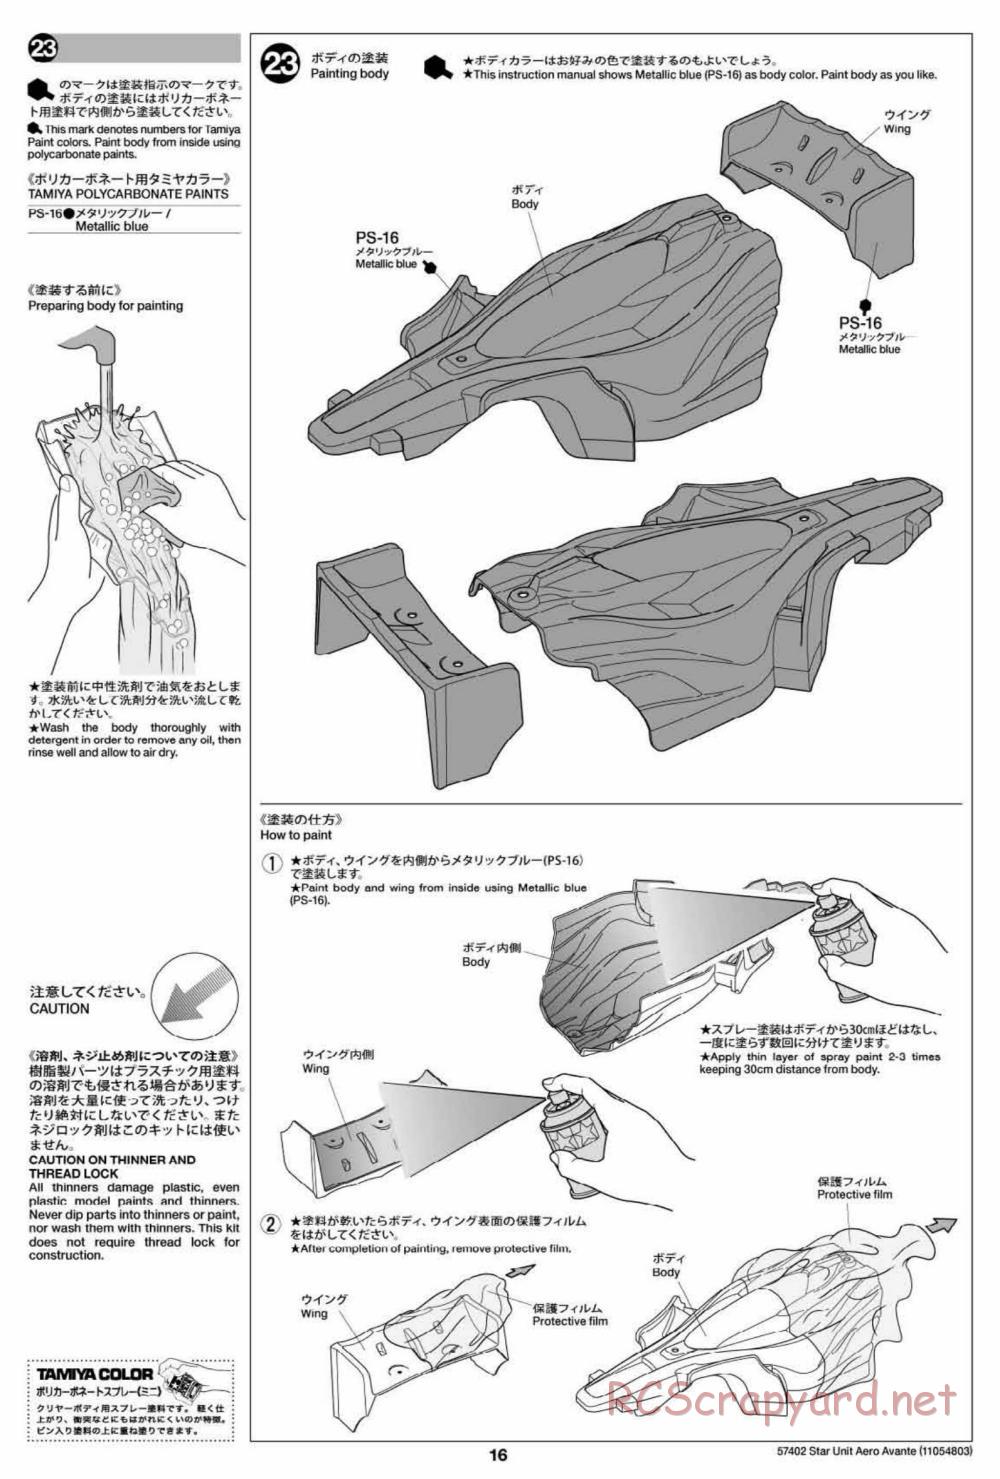 Tamiya - Aero Avante Chassis - Manual - Page 16